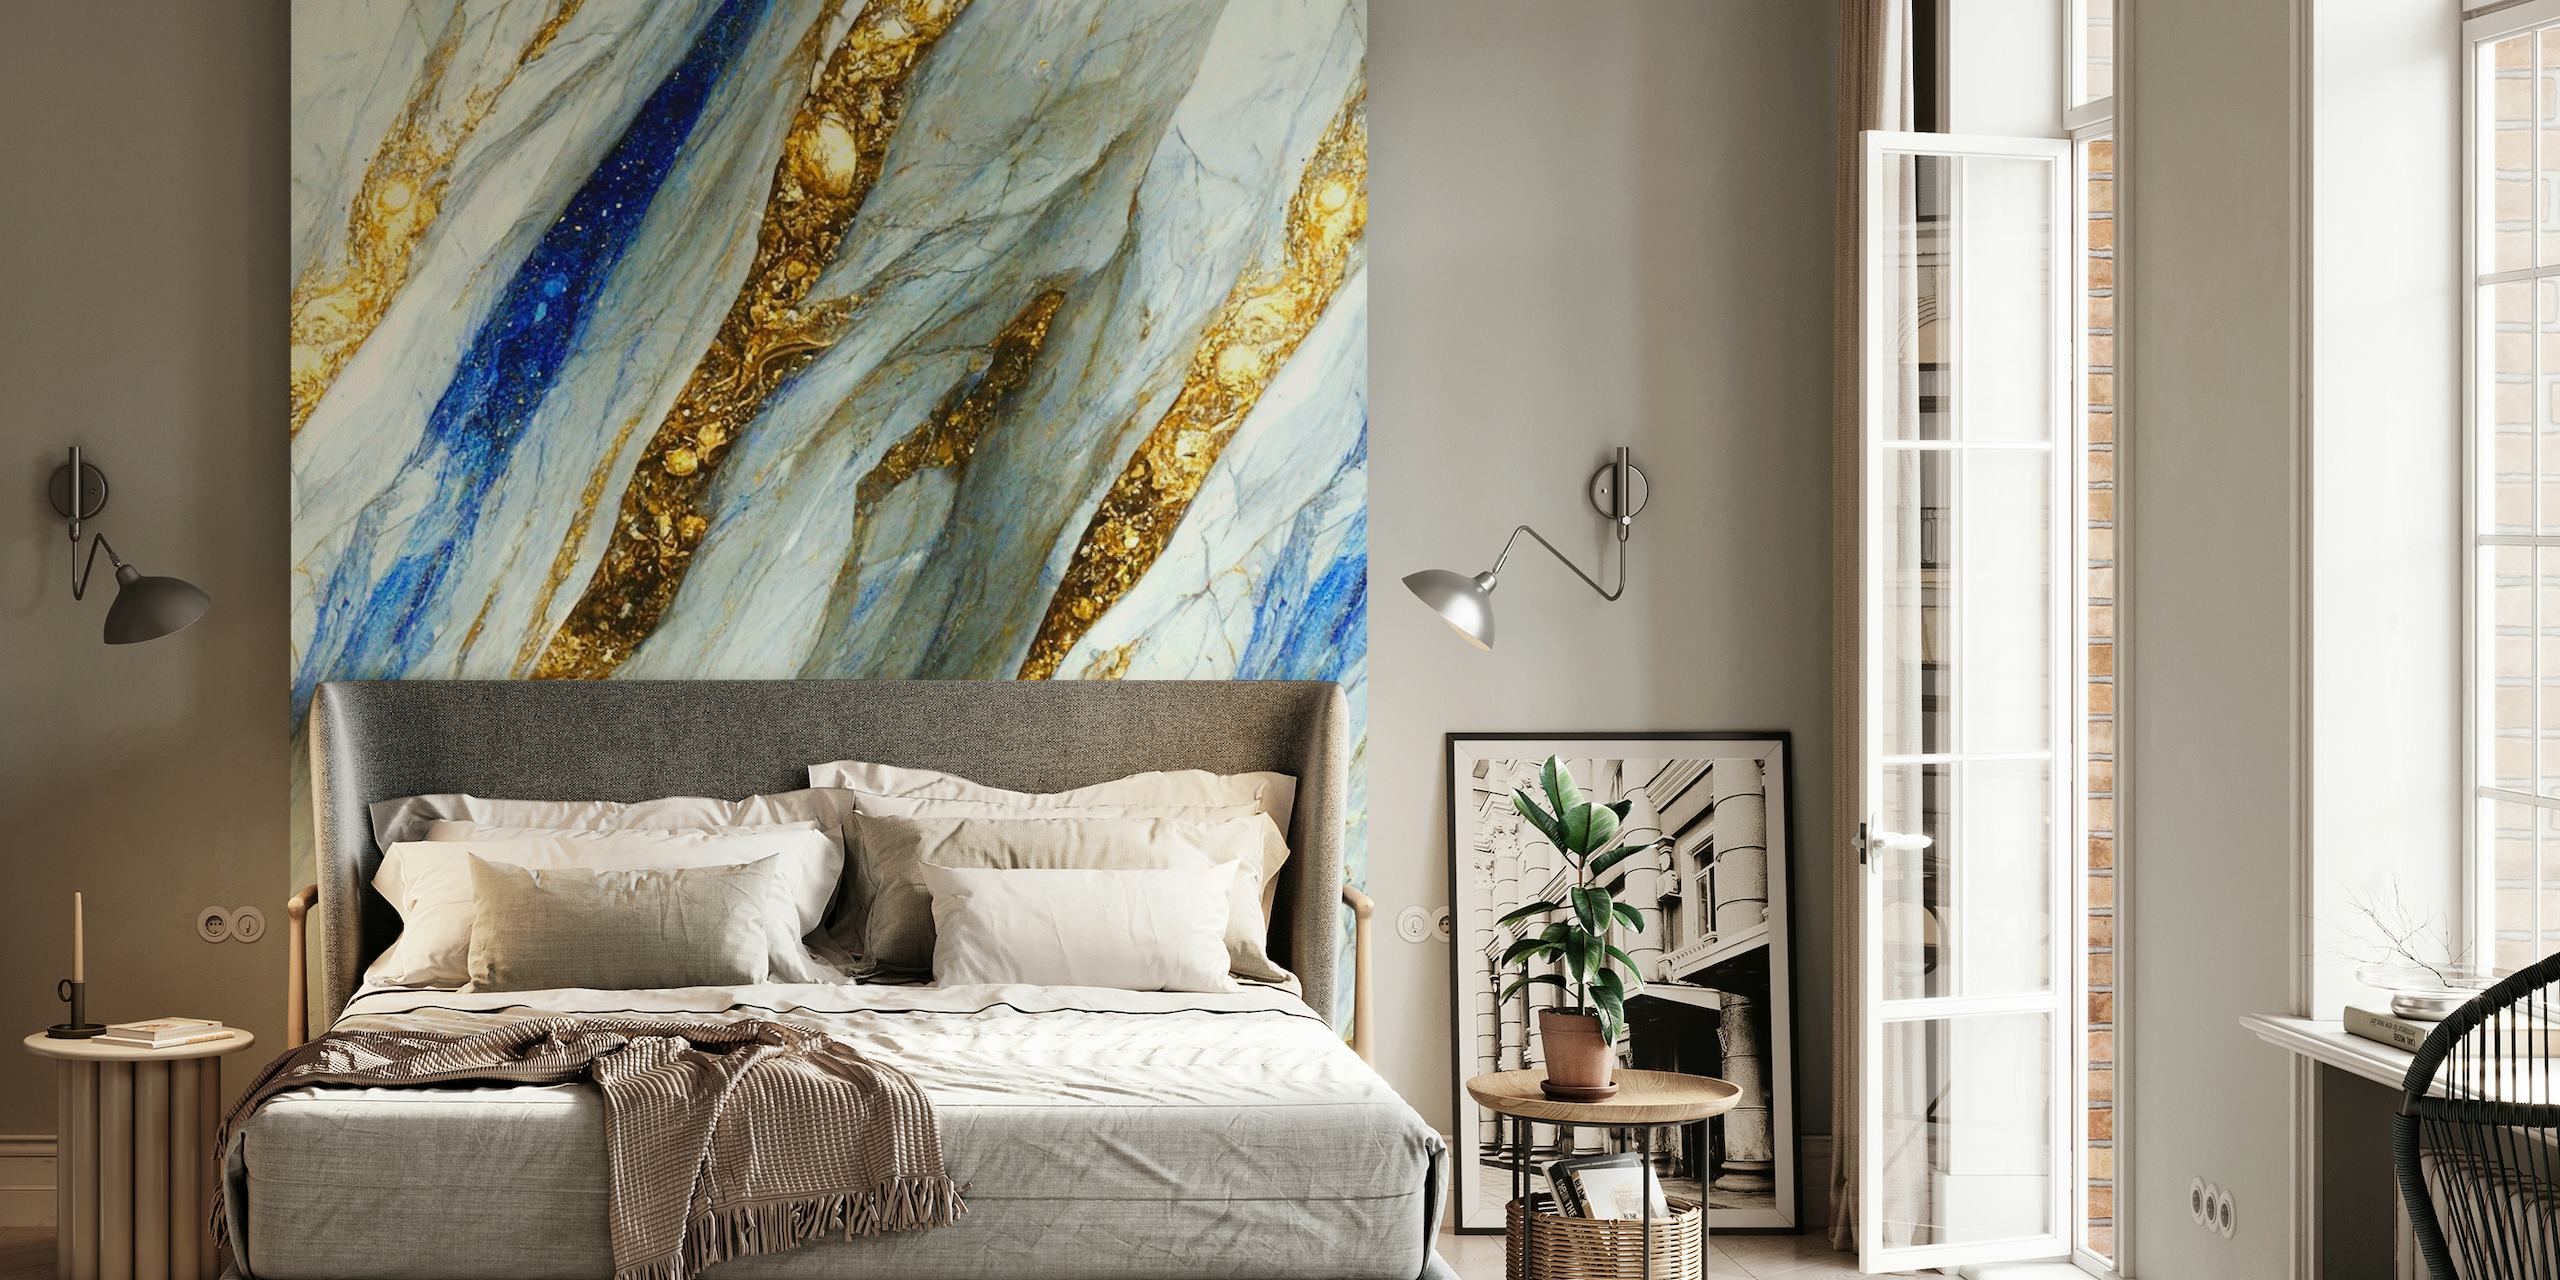 Tyylikäs seinämaalaus kulta-, sininen- ja valkoinen marmorikuvioilla, jotka muistuttavat virtaavia nestemäisen kullan ja jalokiviä.